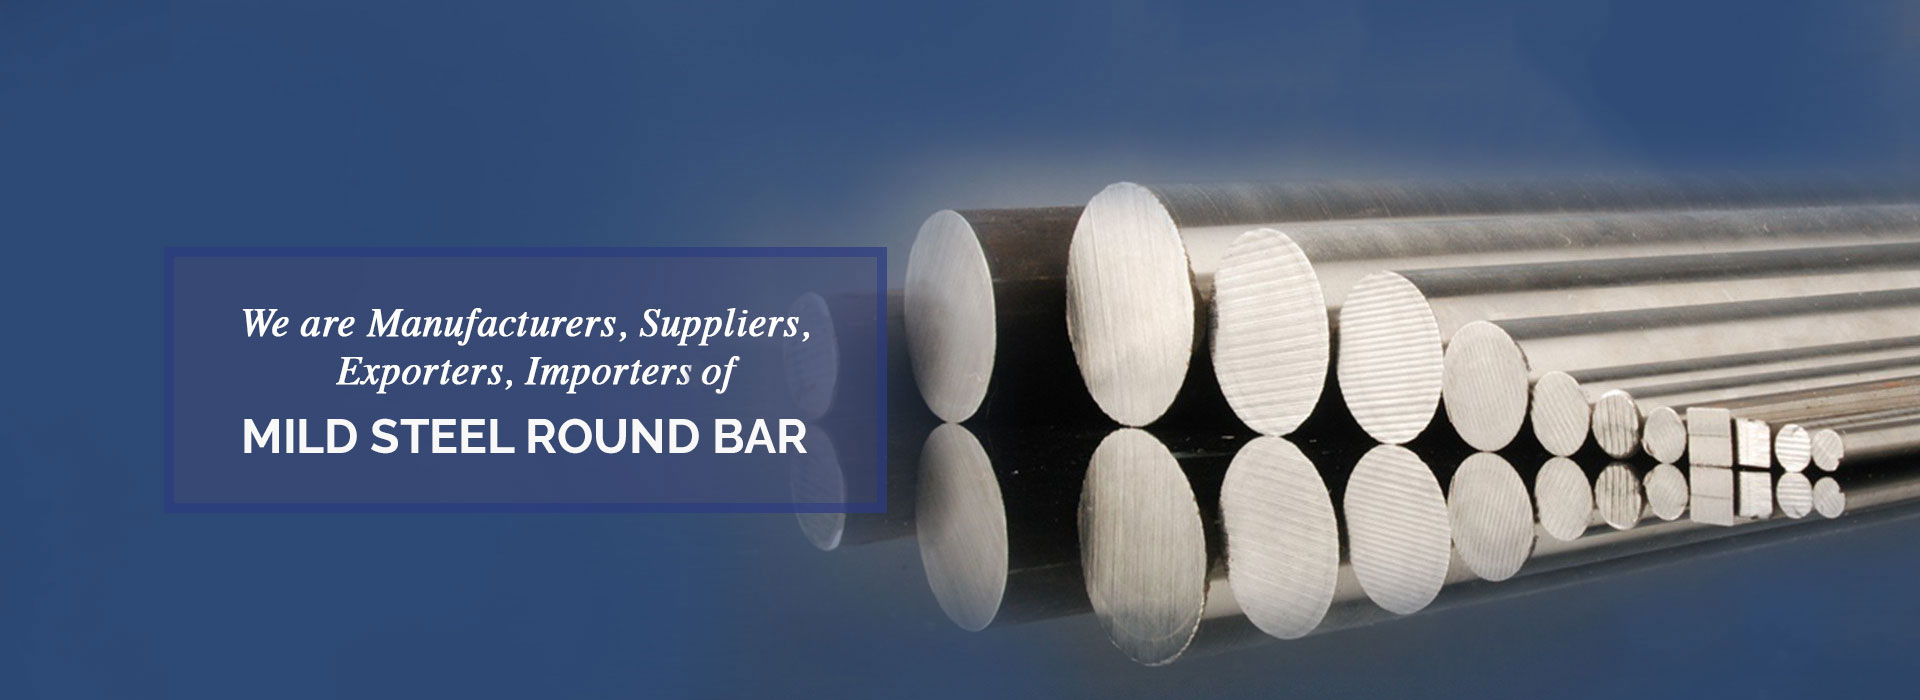 Mild Steel Round Bar Manufacturers in Thailand